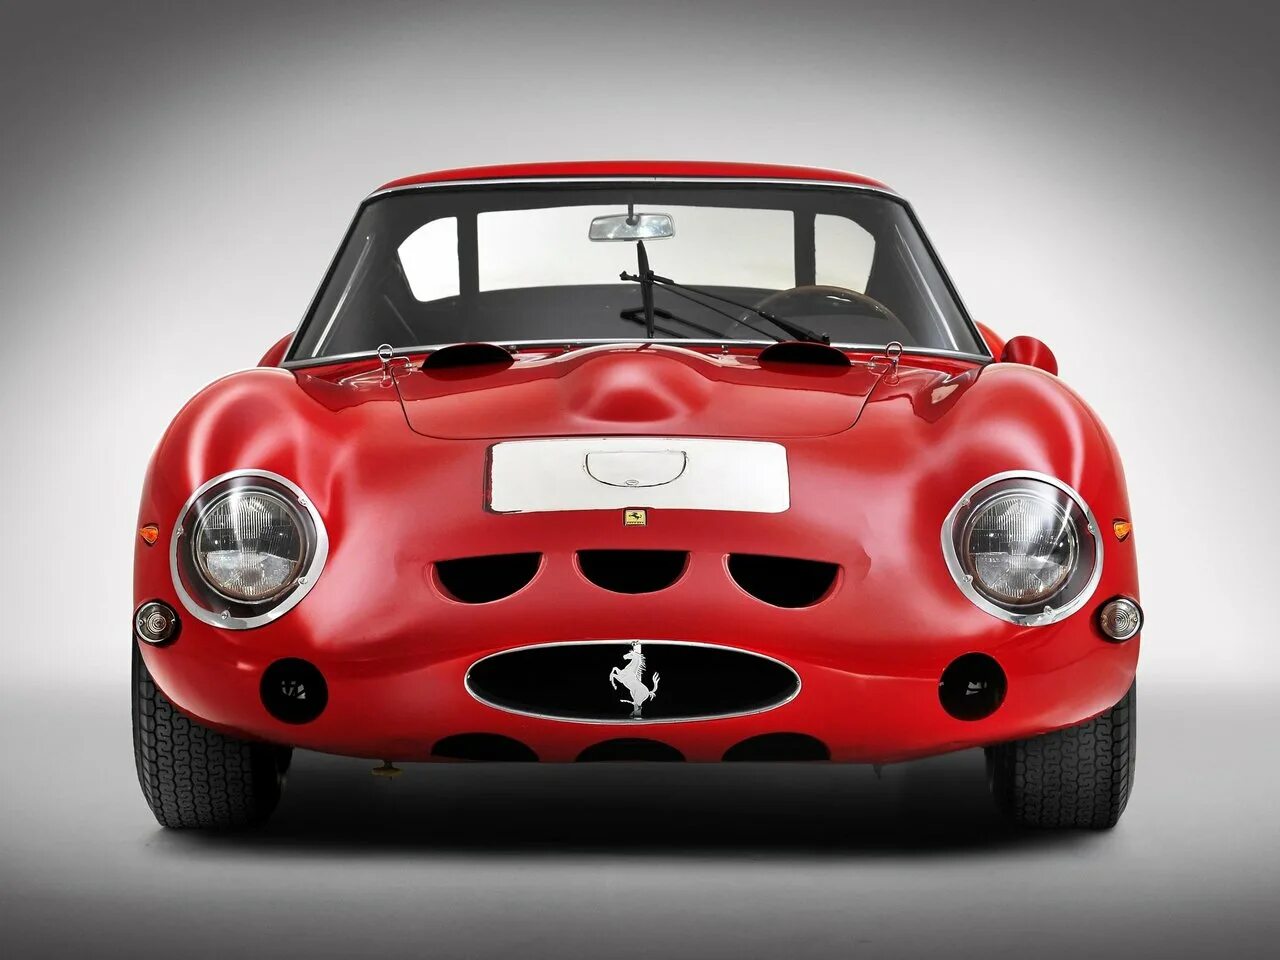 Ferrari gto 1962. Ferrari 250 GTO. Ferrari 250 GTO 1962 аукцион. Ferrari 250 GTO С правым рулём. Феррари 1962.